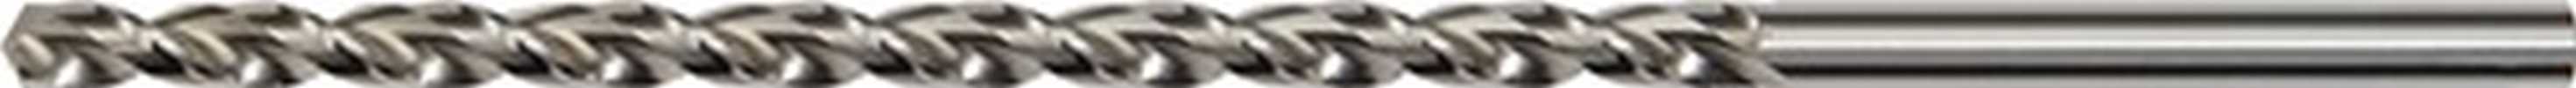 PROMAT Tieflochspiralbohrer DIN 1869 Typ TS  5,5 mm HSS-Co Zylinderschaft Reihe 1 5 Stück